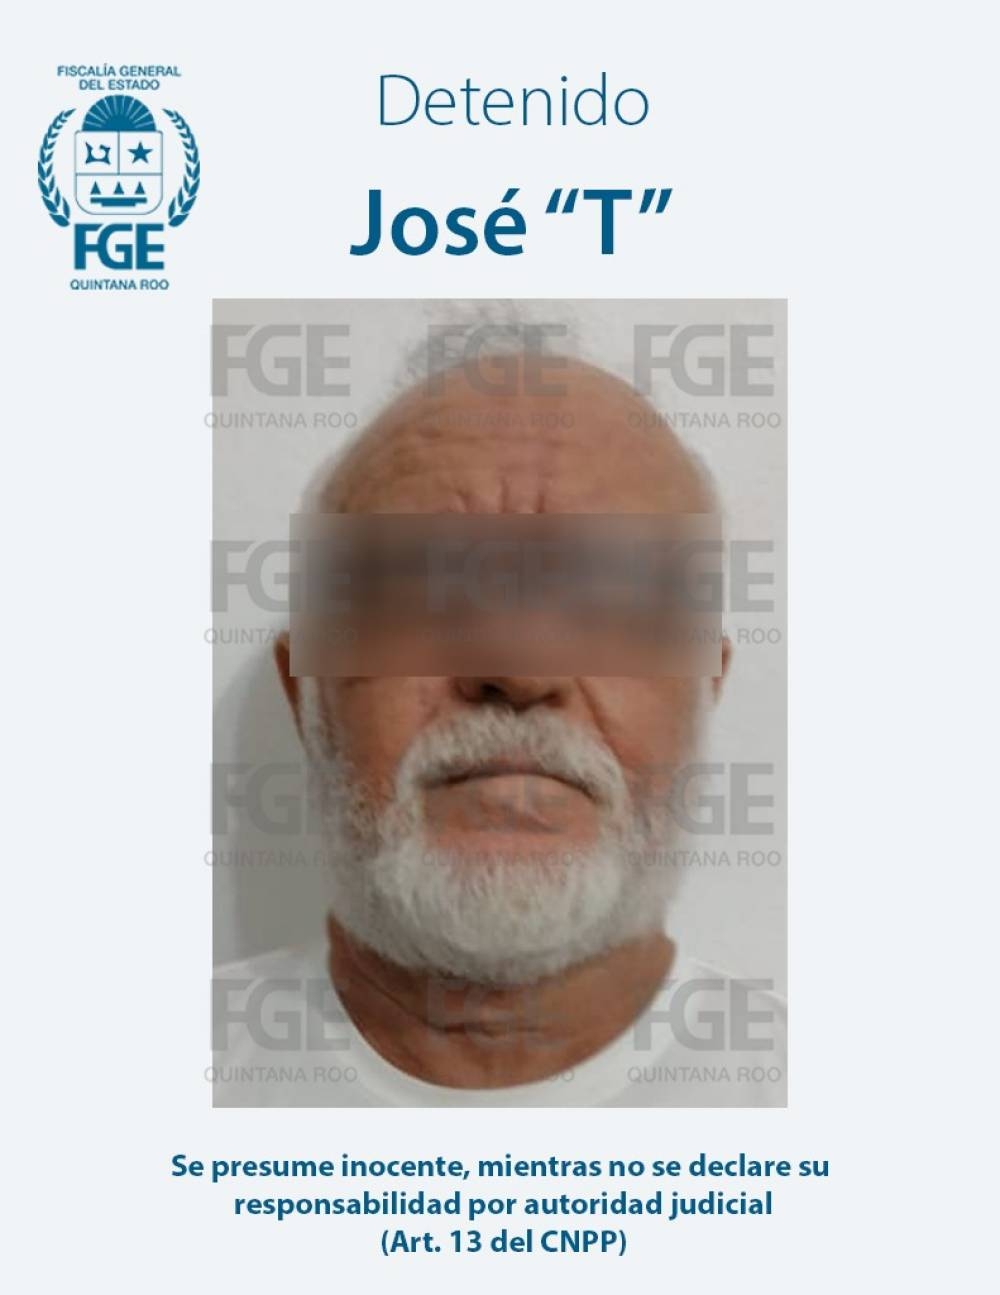 El sujeto es identificado como José "T"